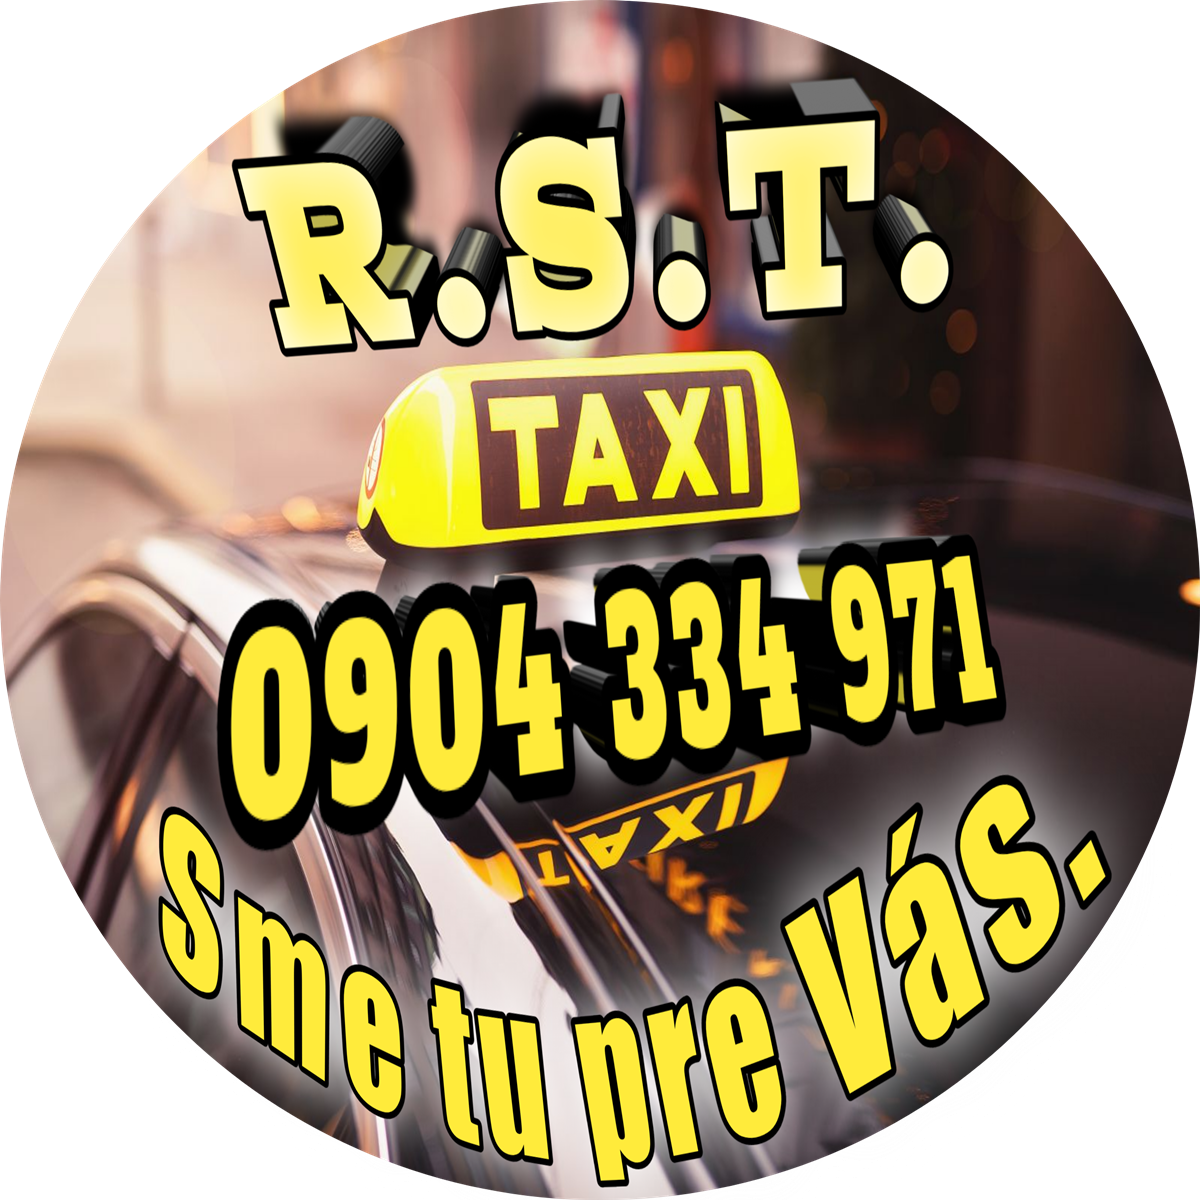 Taxislužba, Taxi, Kuriér, Doručovacie služby, Osobná preprava  - R.S.T. Taxi Brezno a okolie (Horehronie)